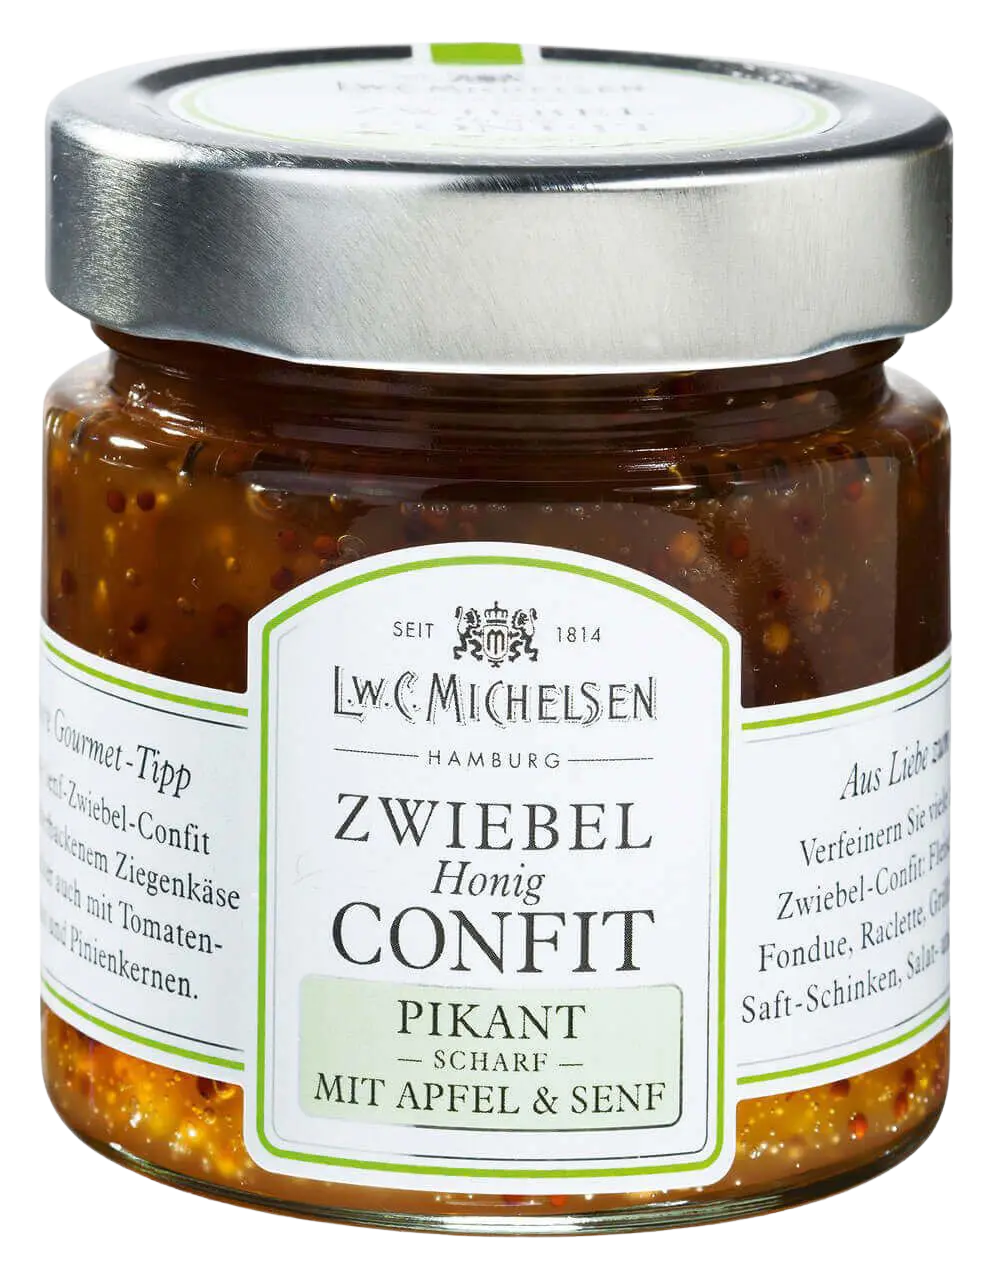 L.W.C. Michelsen - Zwiebel Confit -Pikant - mit Apfel und Senf